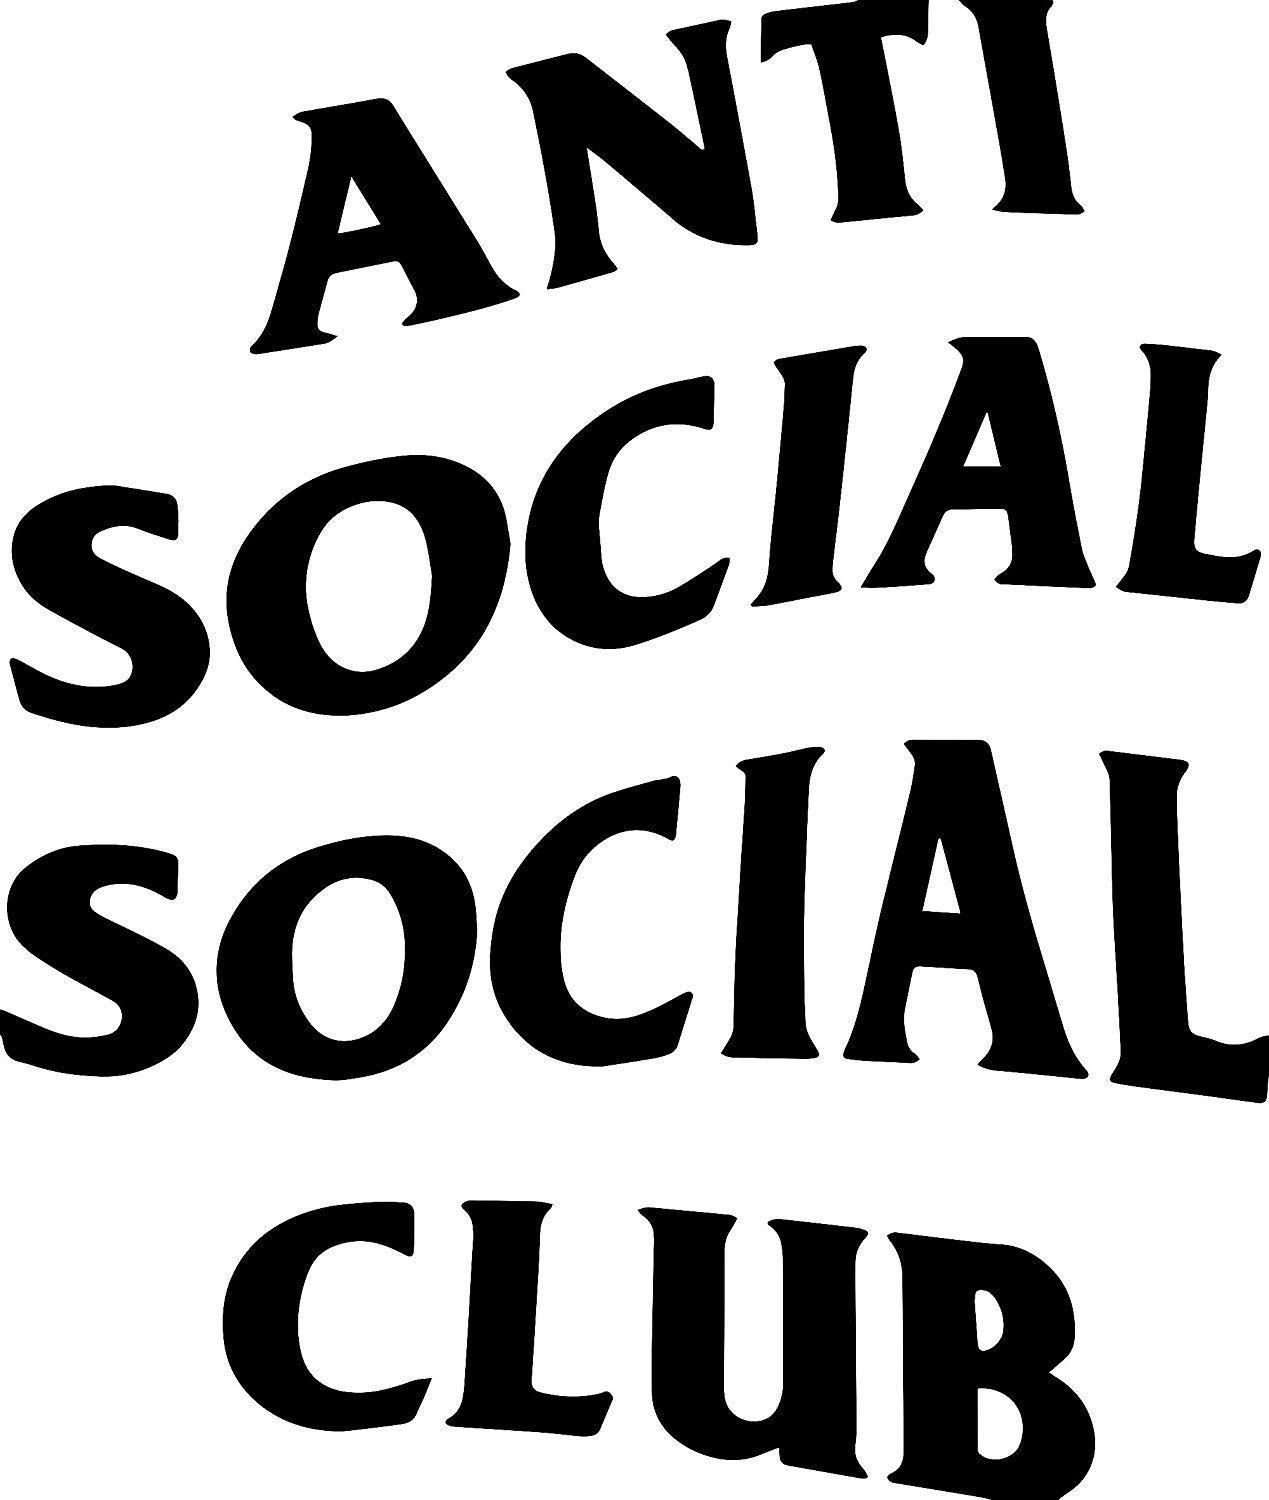 Anti Social Social Club Black Logo - Amazon.com : ANTI SOCIAL SOCIAL CLUB 5.5